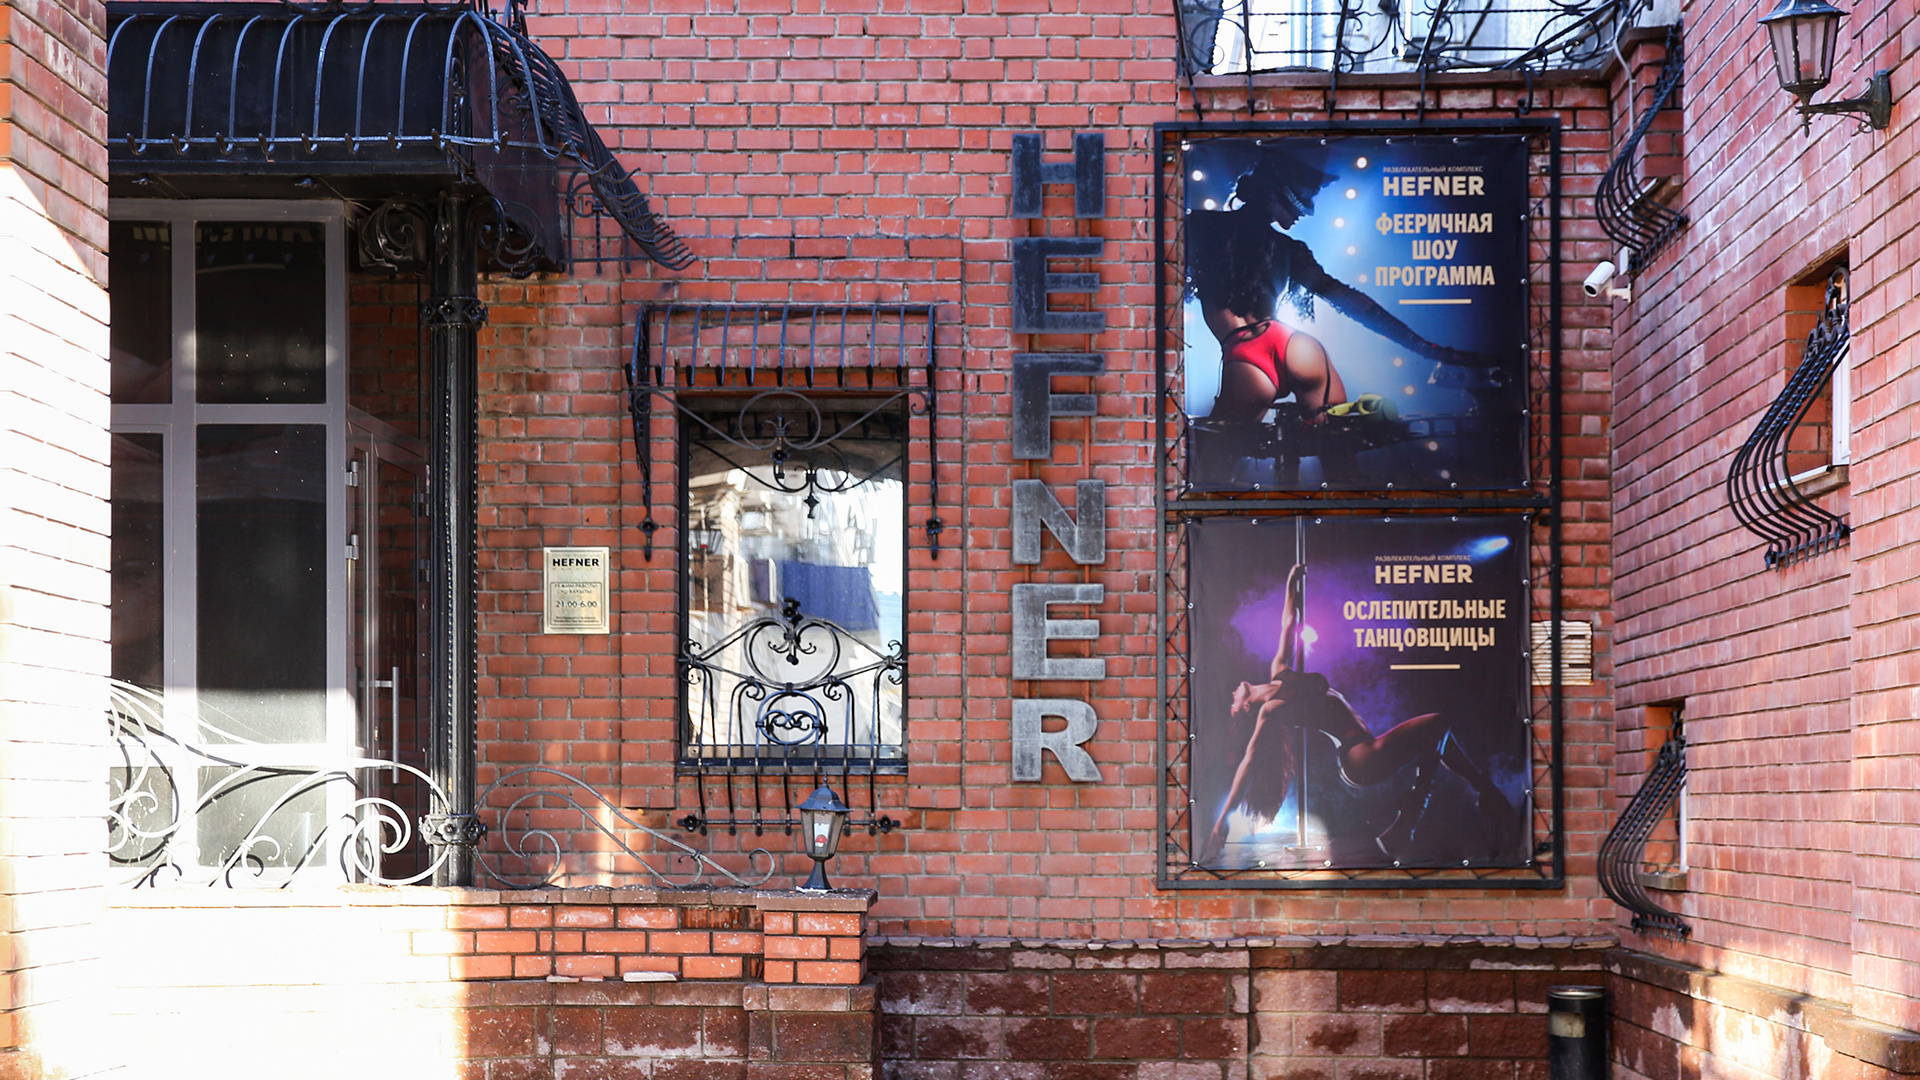 В Уфе снова продают принадлежащий местному политику ночной клуб Hefner возле отделения ГИБДД